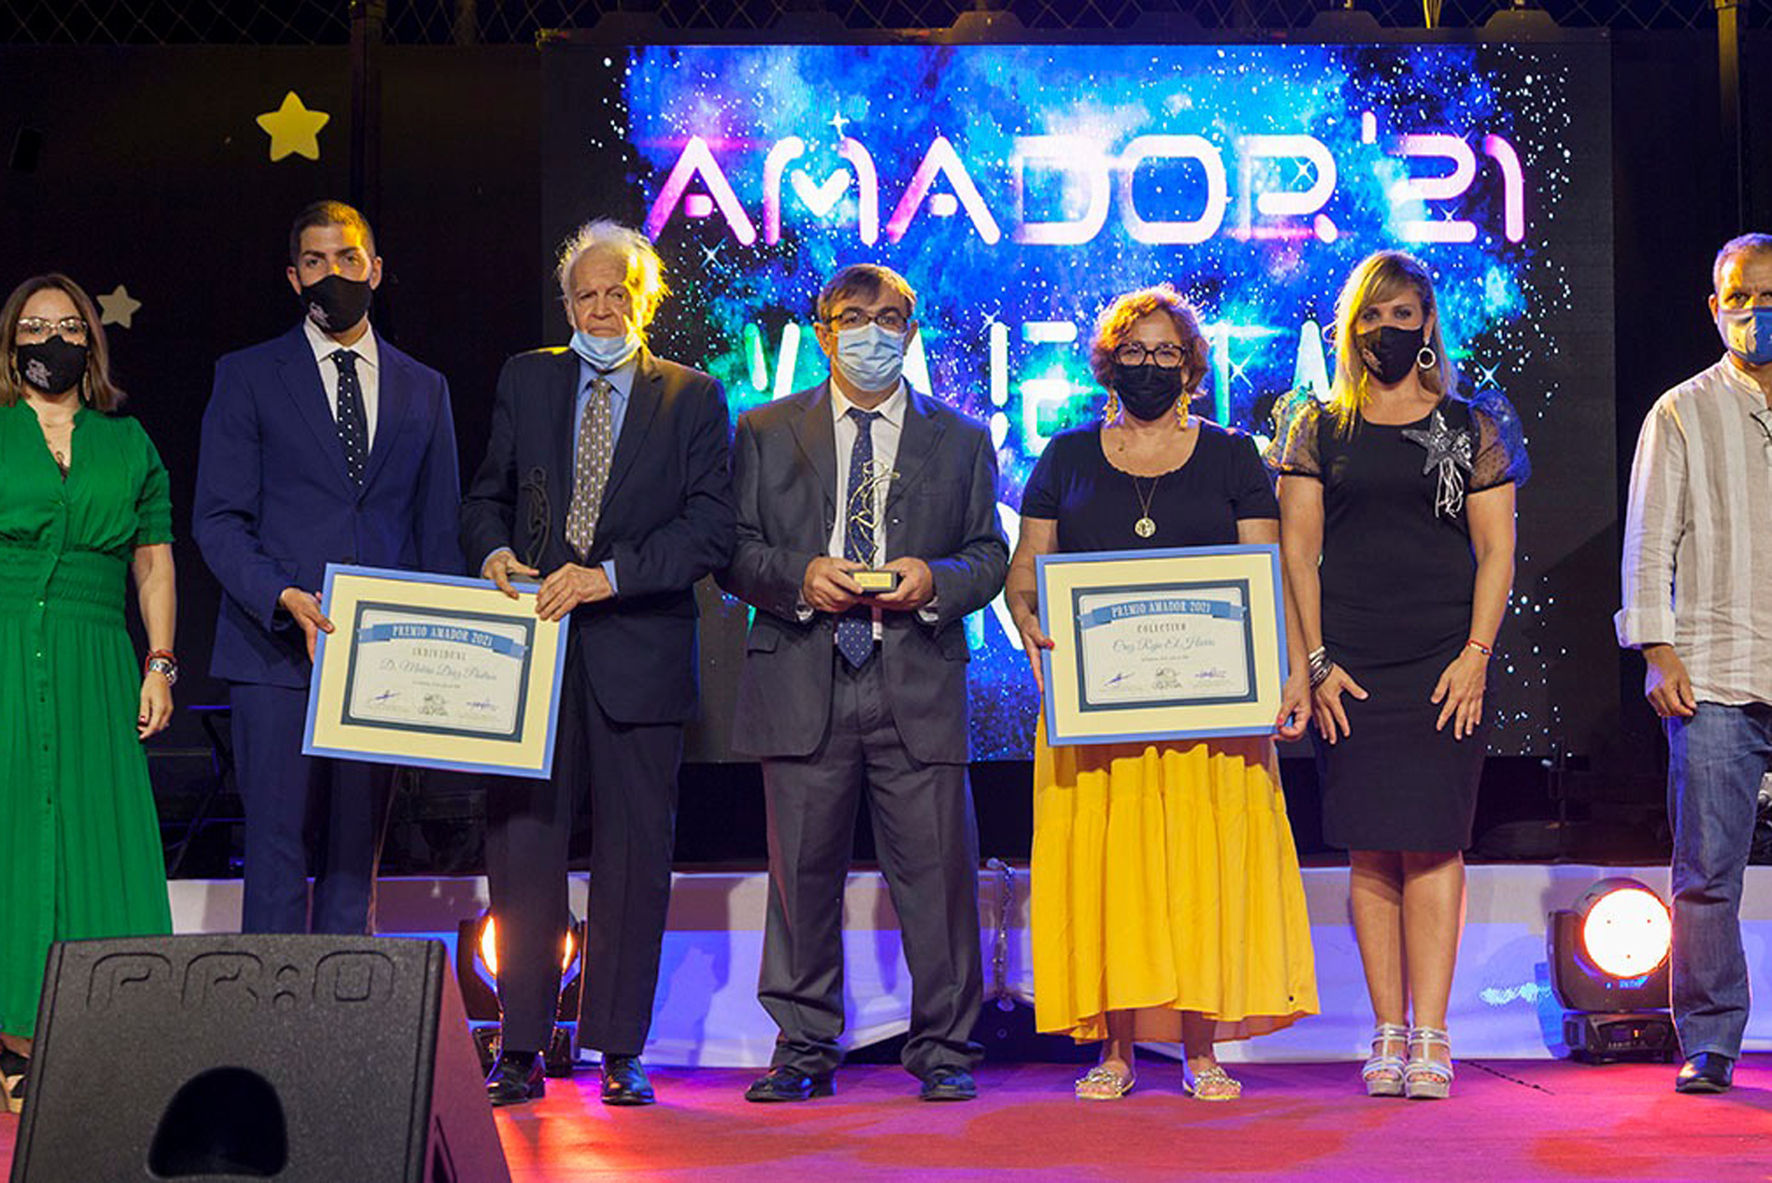 La asociación Amador entrega sus “Premios Amador 2021” en una gala que viajó hasta las estrellas